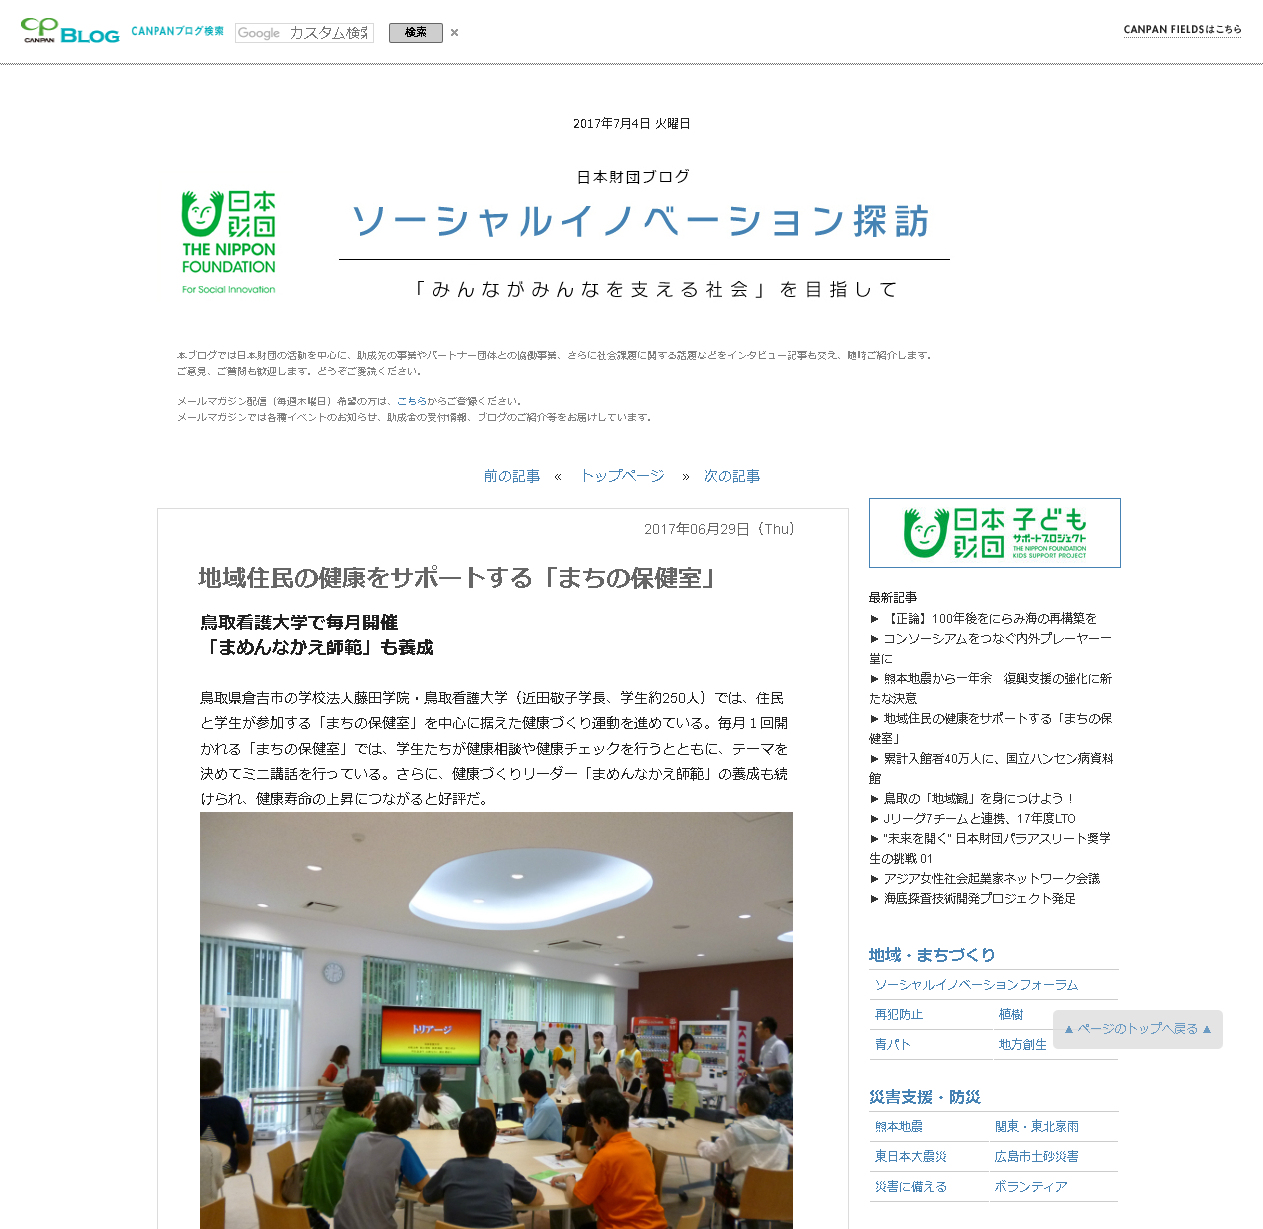 地域住民の健康をサポートする「まちの保健室」-日本財団ブログソーシャルイノベーション探訪